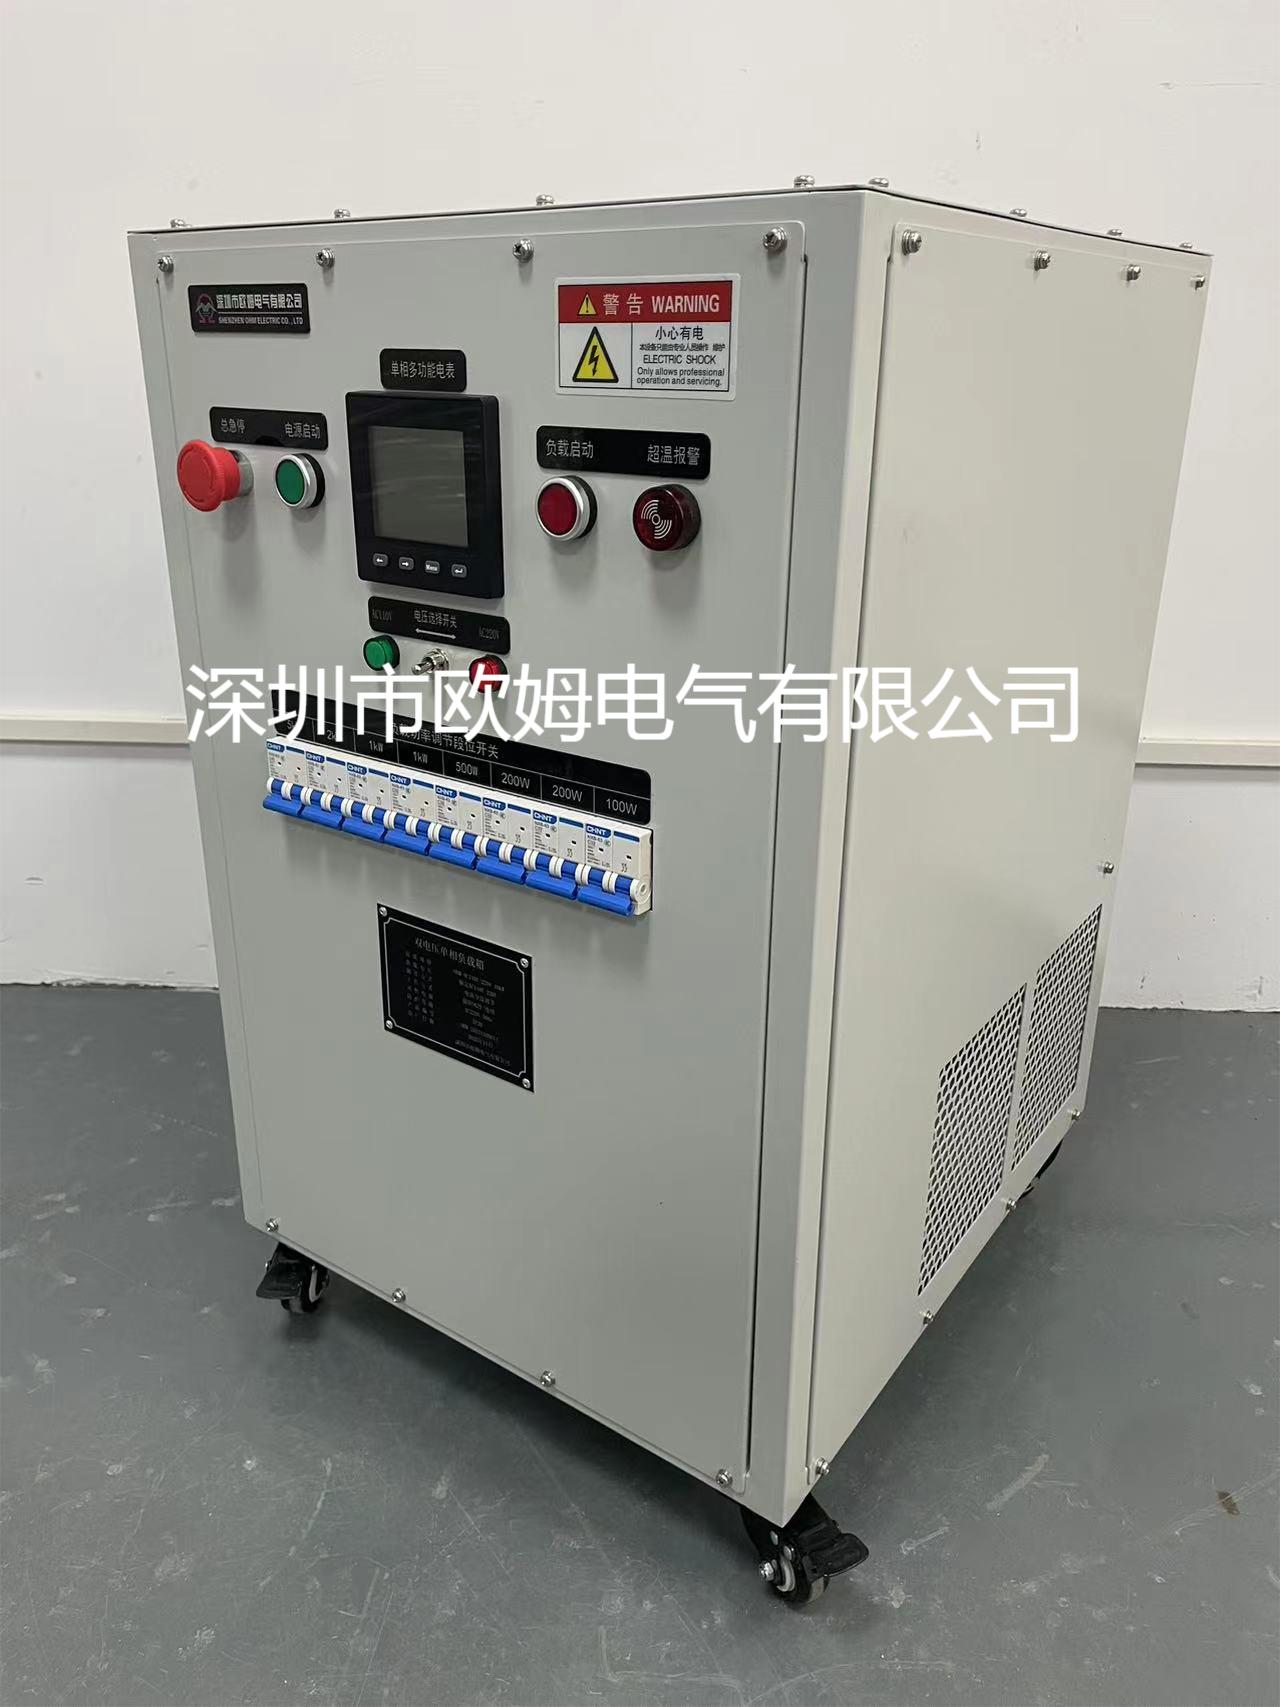 AC115-230V 10kW双电压负载